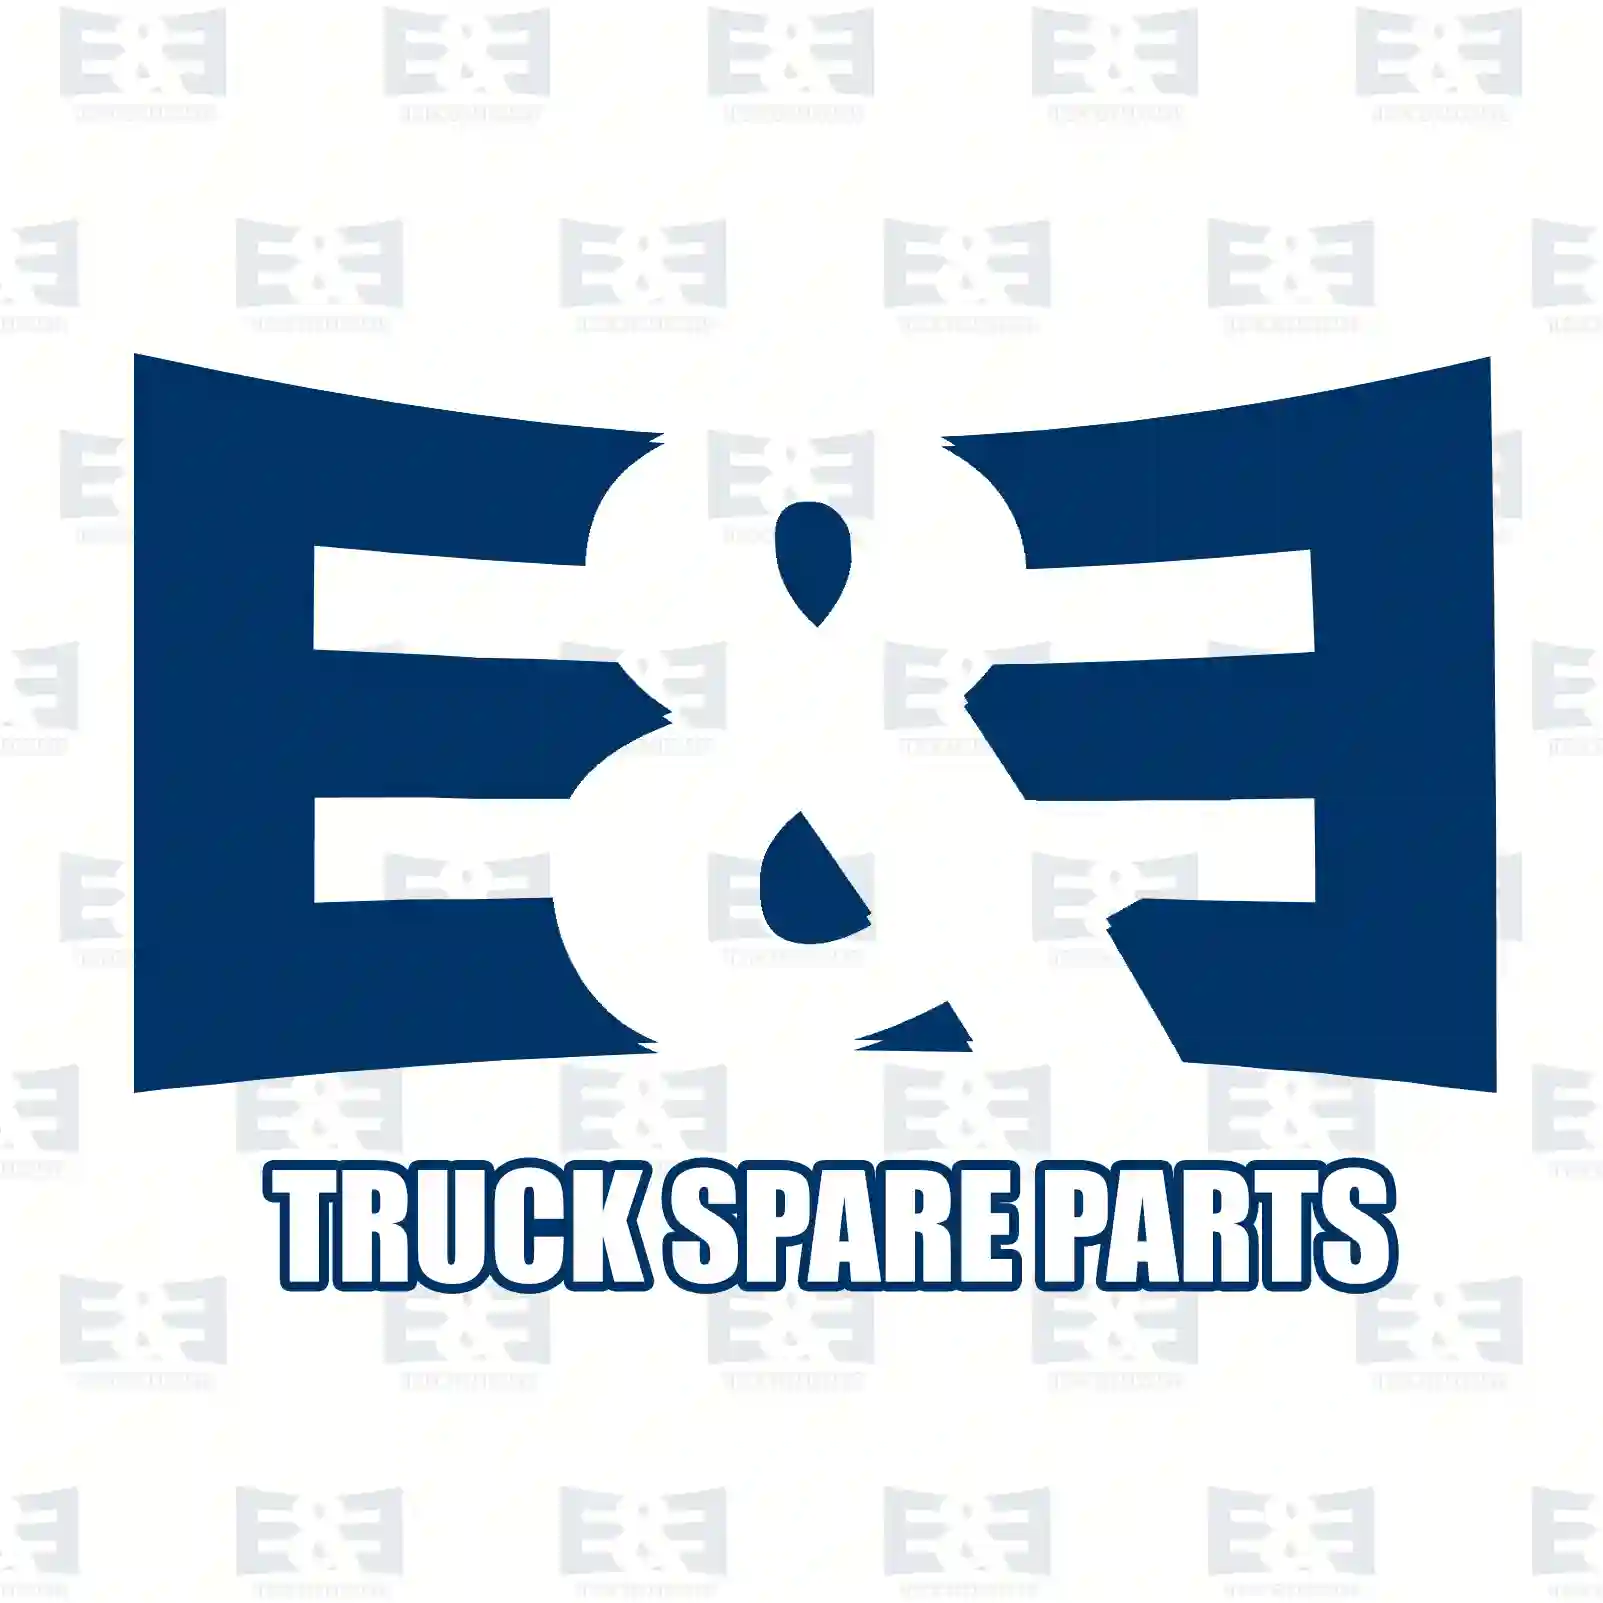 O-ring, 2E2285655, 7400992065, 99206 ||  2E2285655 E&E Truck Spare Parts | Truck Spare Parts, Auotomotive Spare Parts O-ring, 2E2285655, 7400992065, 99206 ||  2E2285655 E&E Truck Spare Parts | Truck Spare Parts, Auotomotive Spare Parts